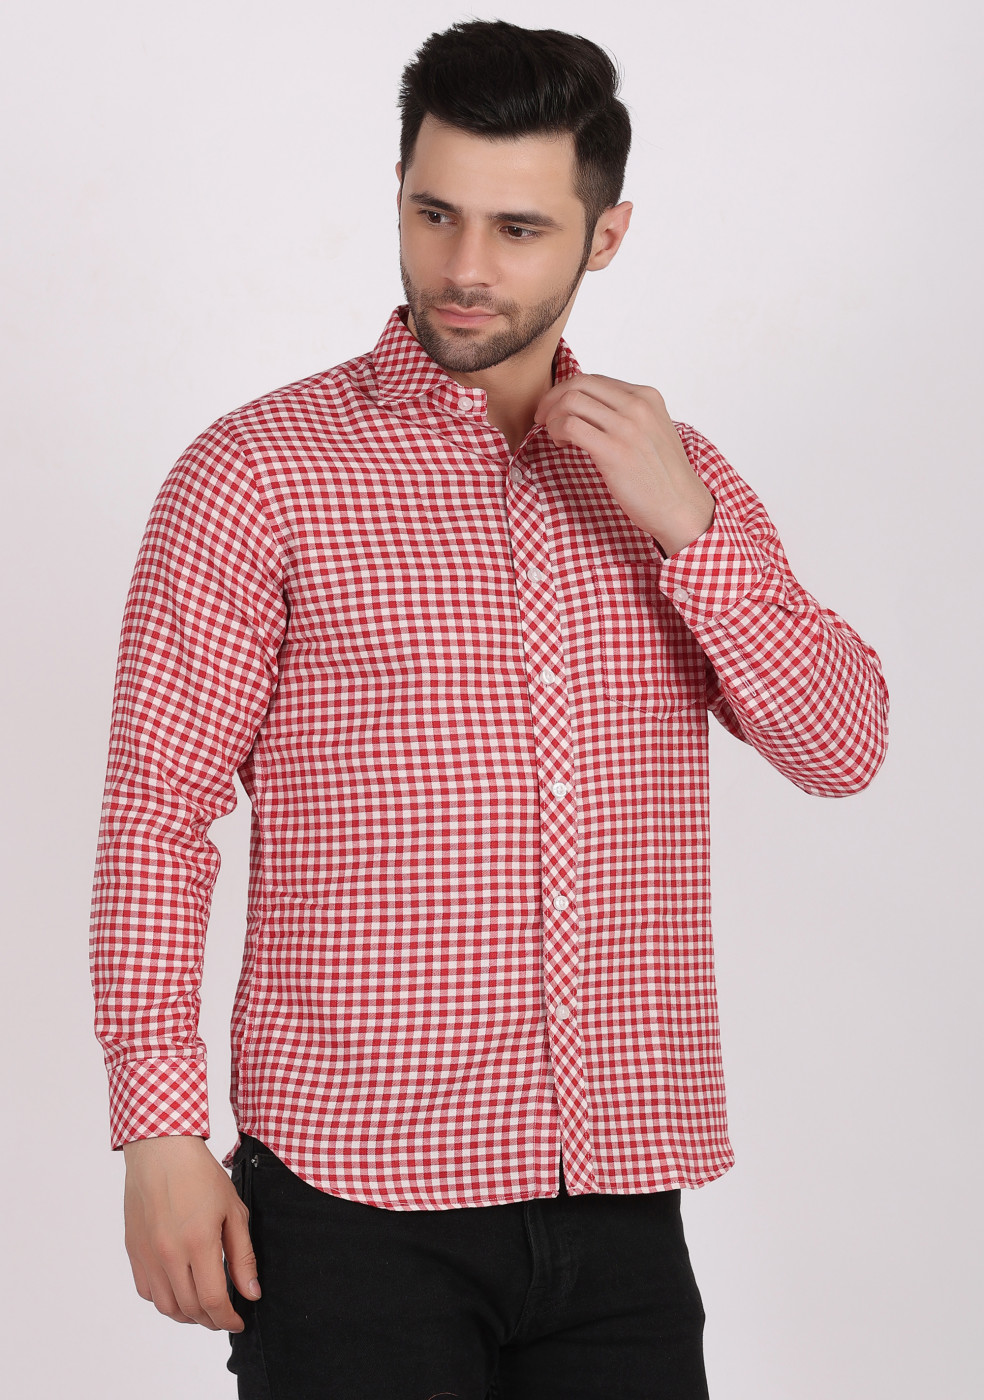 ASHTOM Red White Check Shirt For Men